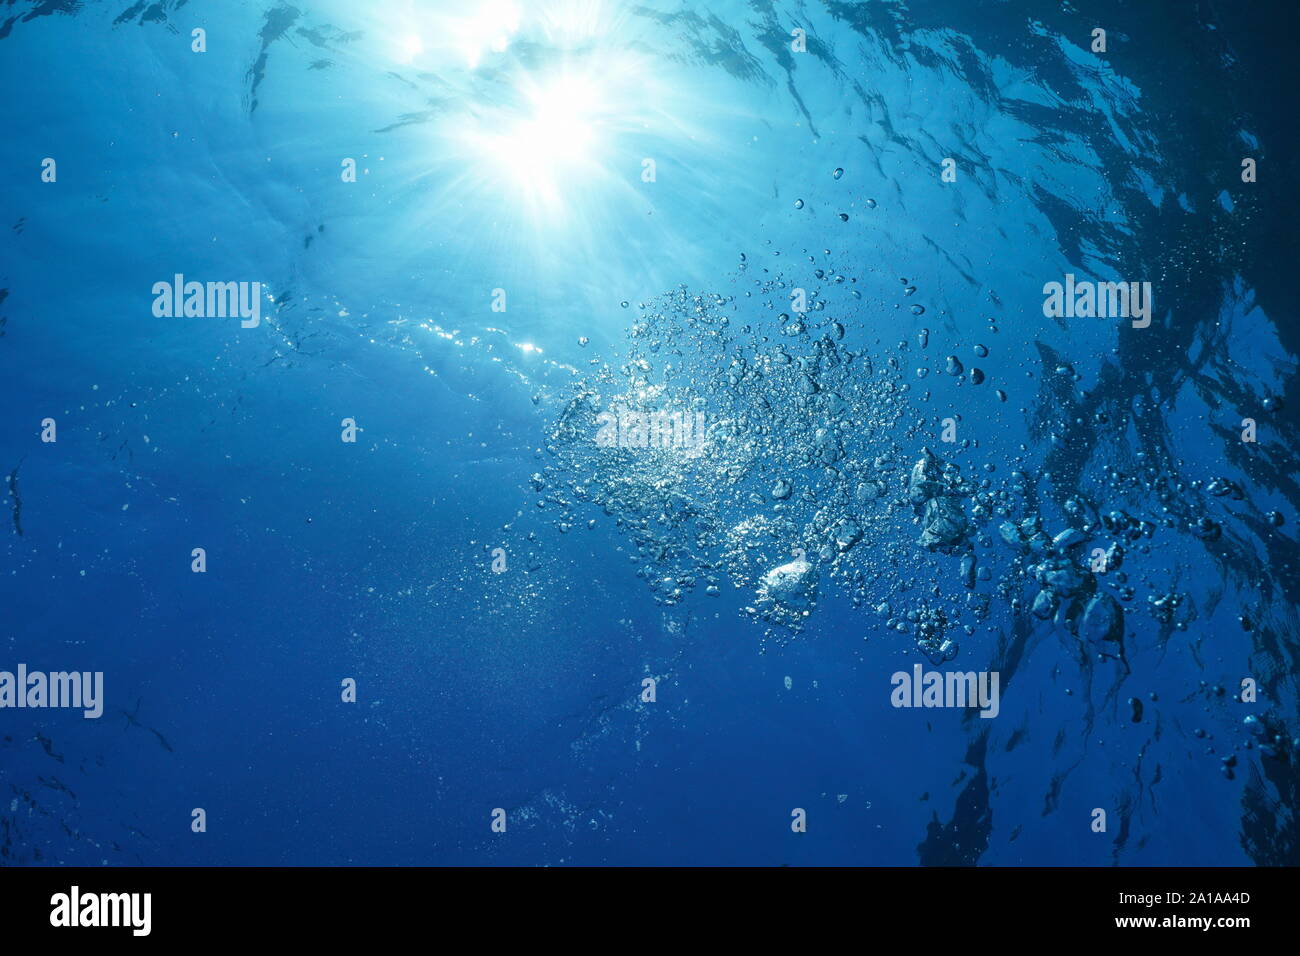 La lumière du soleil dans l'eau sous la surface avec des bulles d'air, mer Méditerranée, scène naturelles, la Côte d'Azur, France Banque D'Images